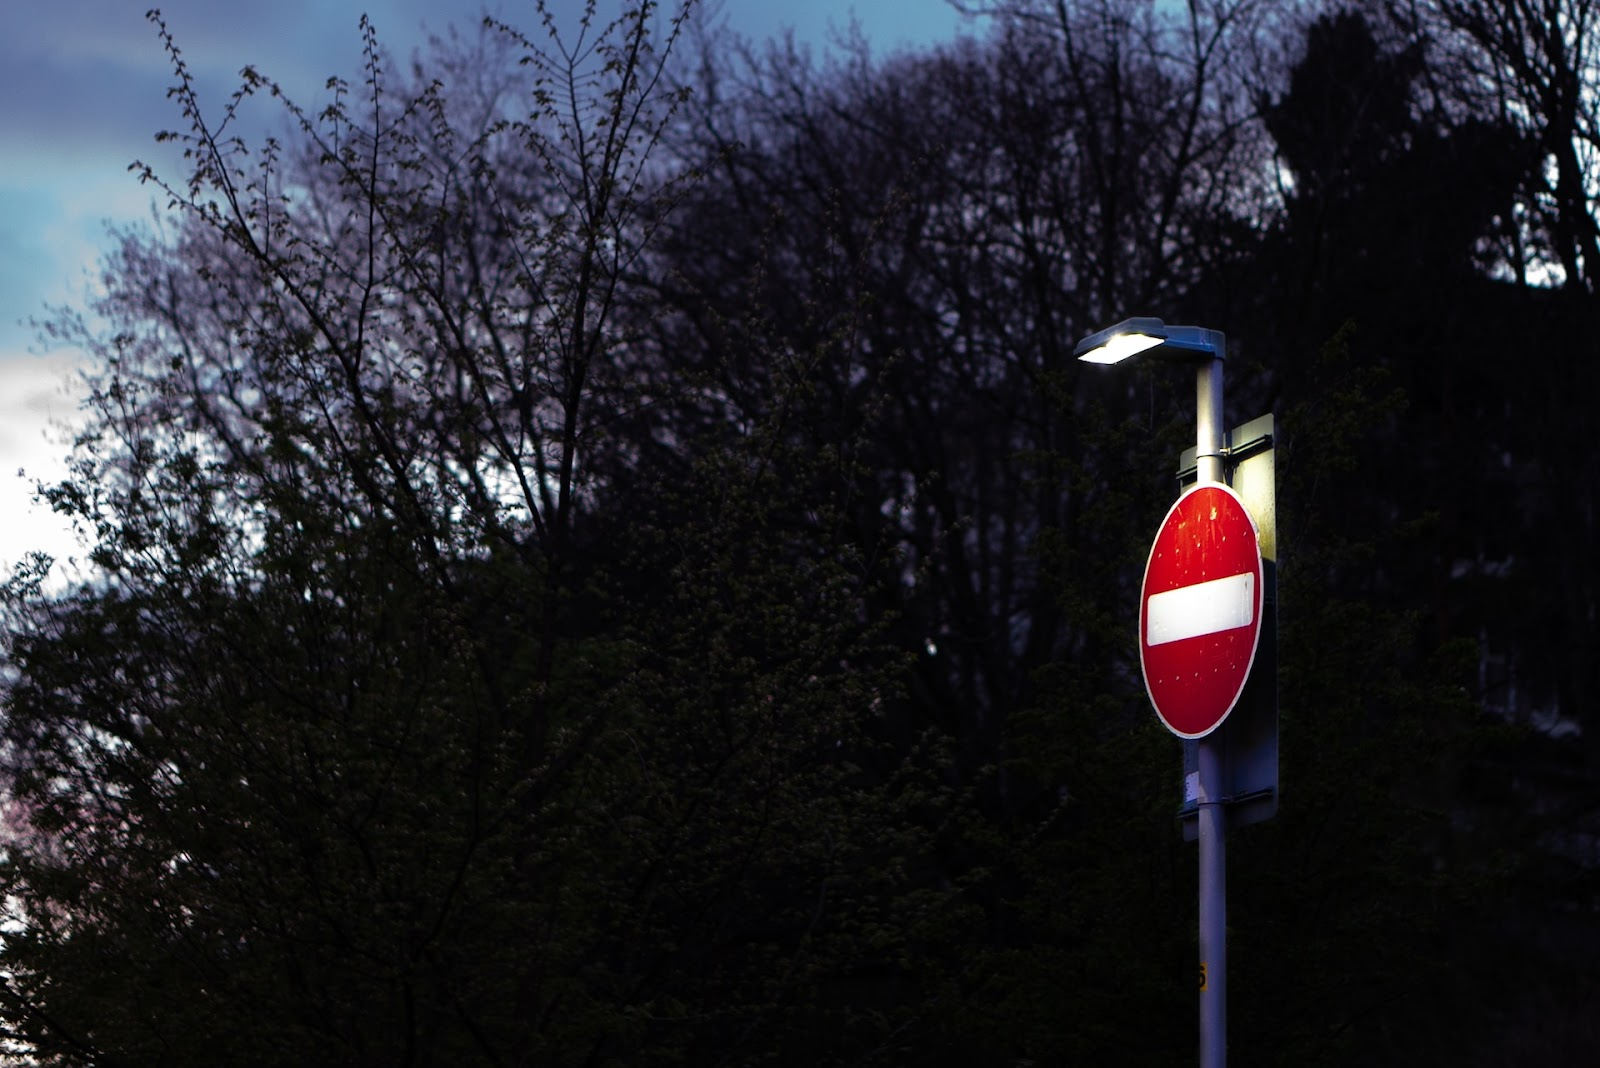 A stop sign under a dimly lit street light